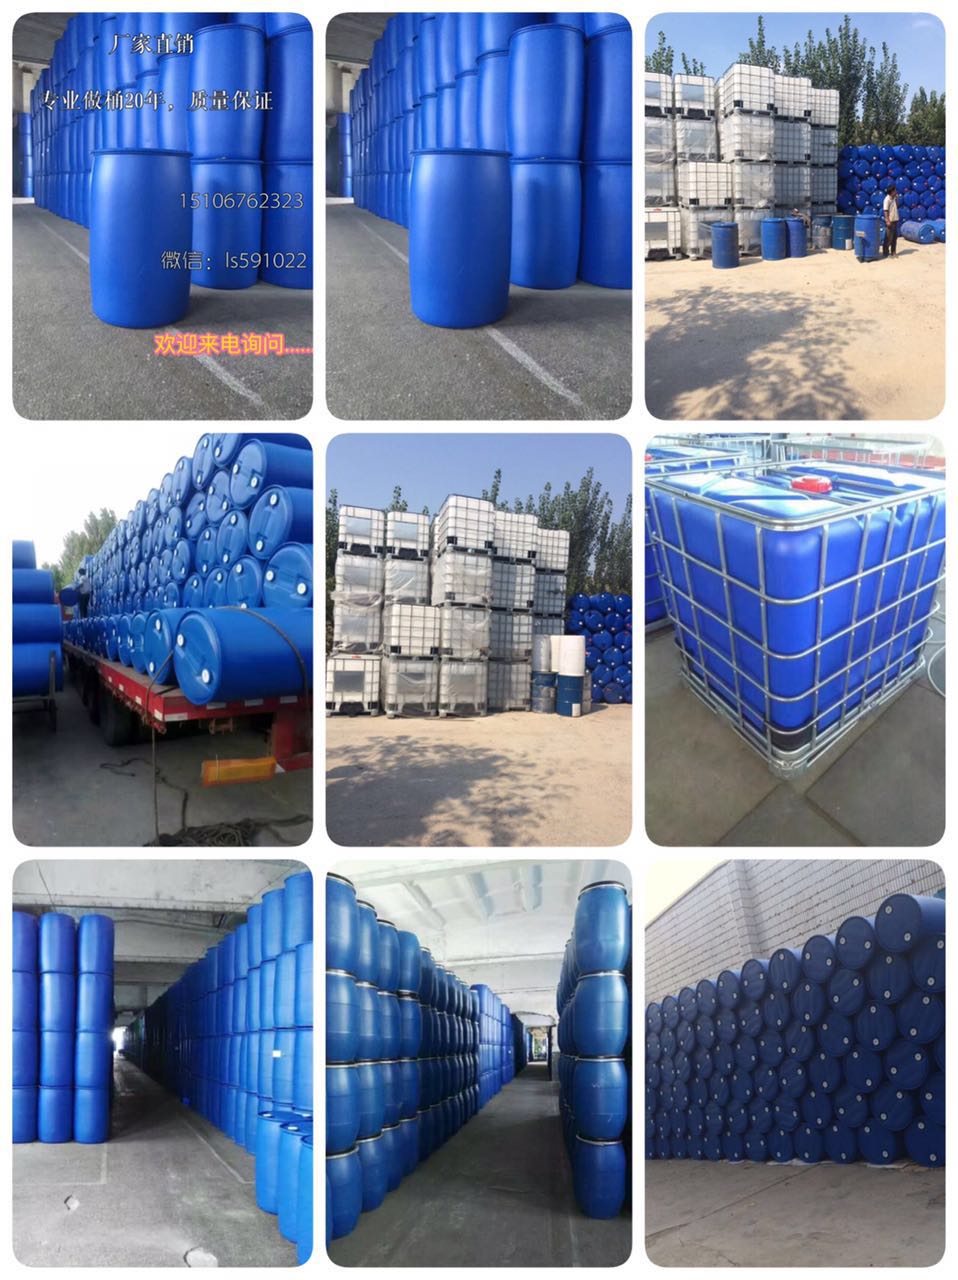 泗水厂家发布200L塑料桶、化工桶、吨桶、图片